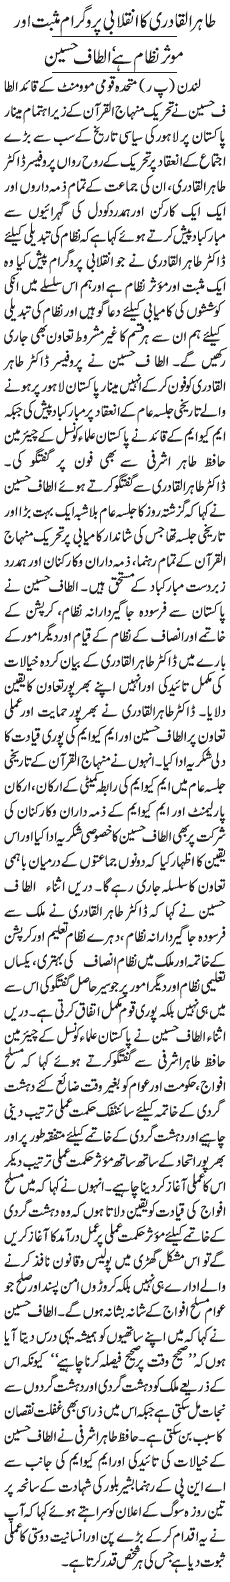 Minhaj-ul-Quran  Print Media Coverage Daily Jang  Front Page